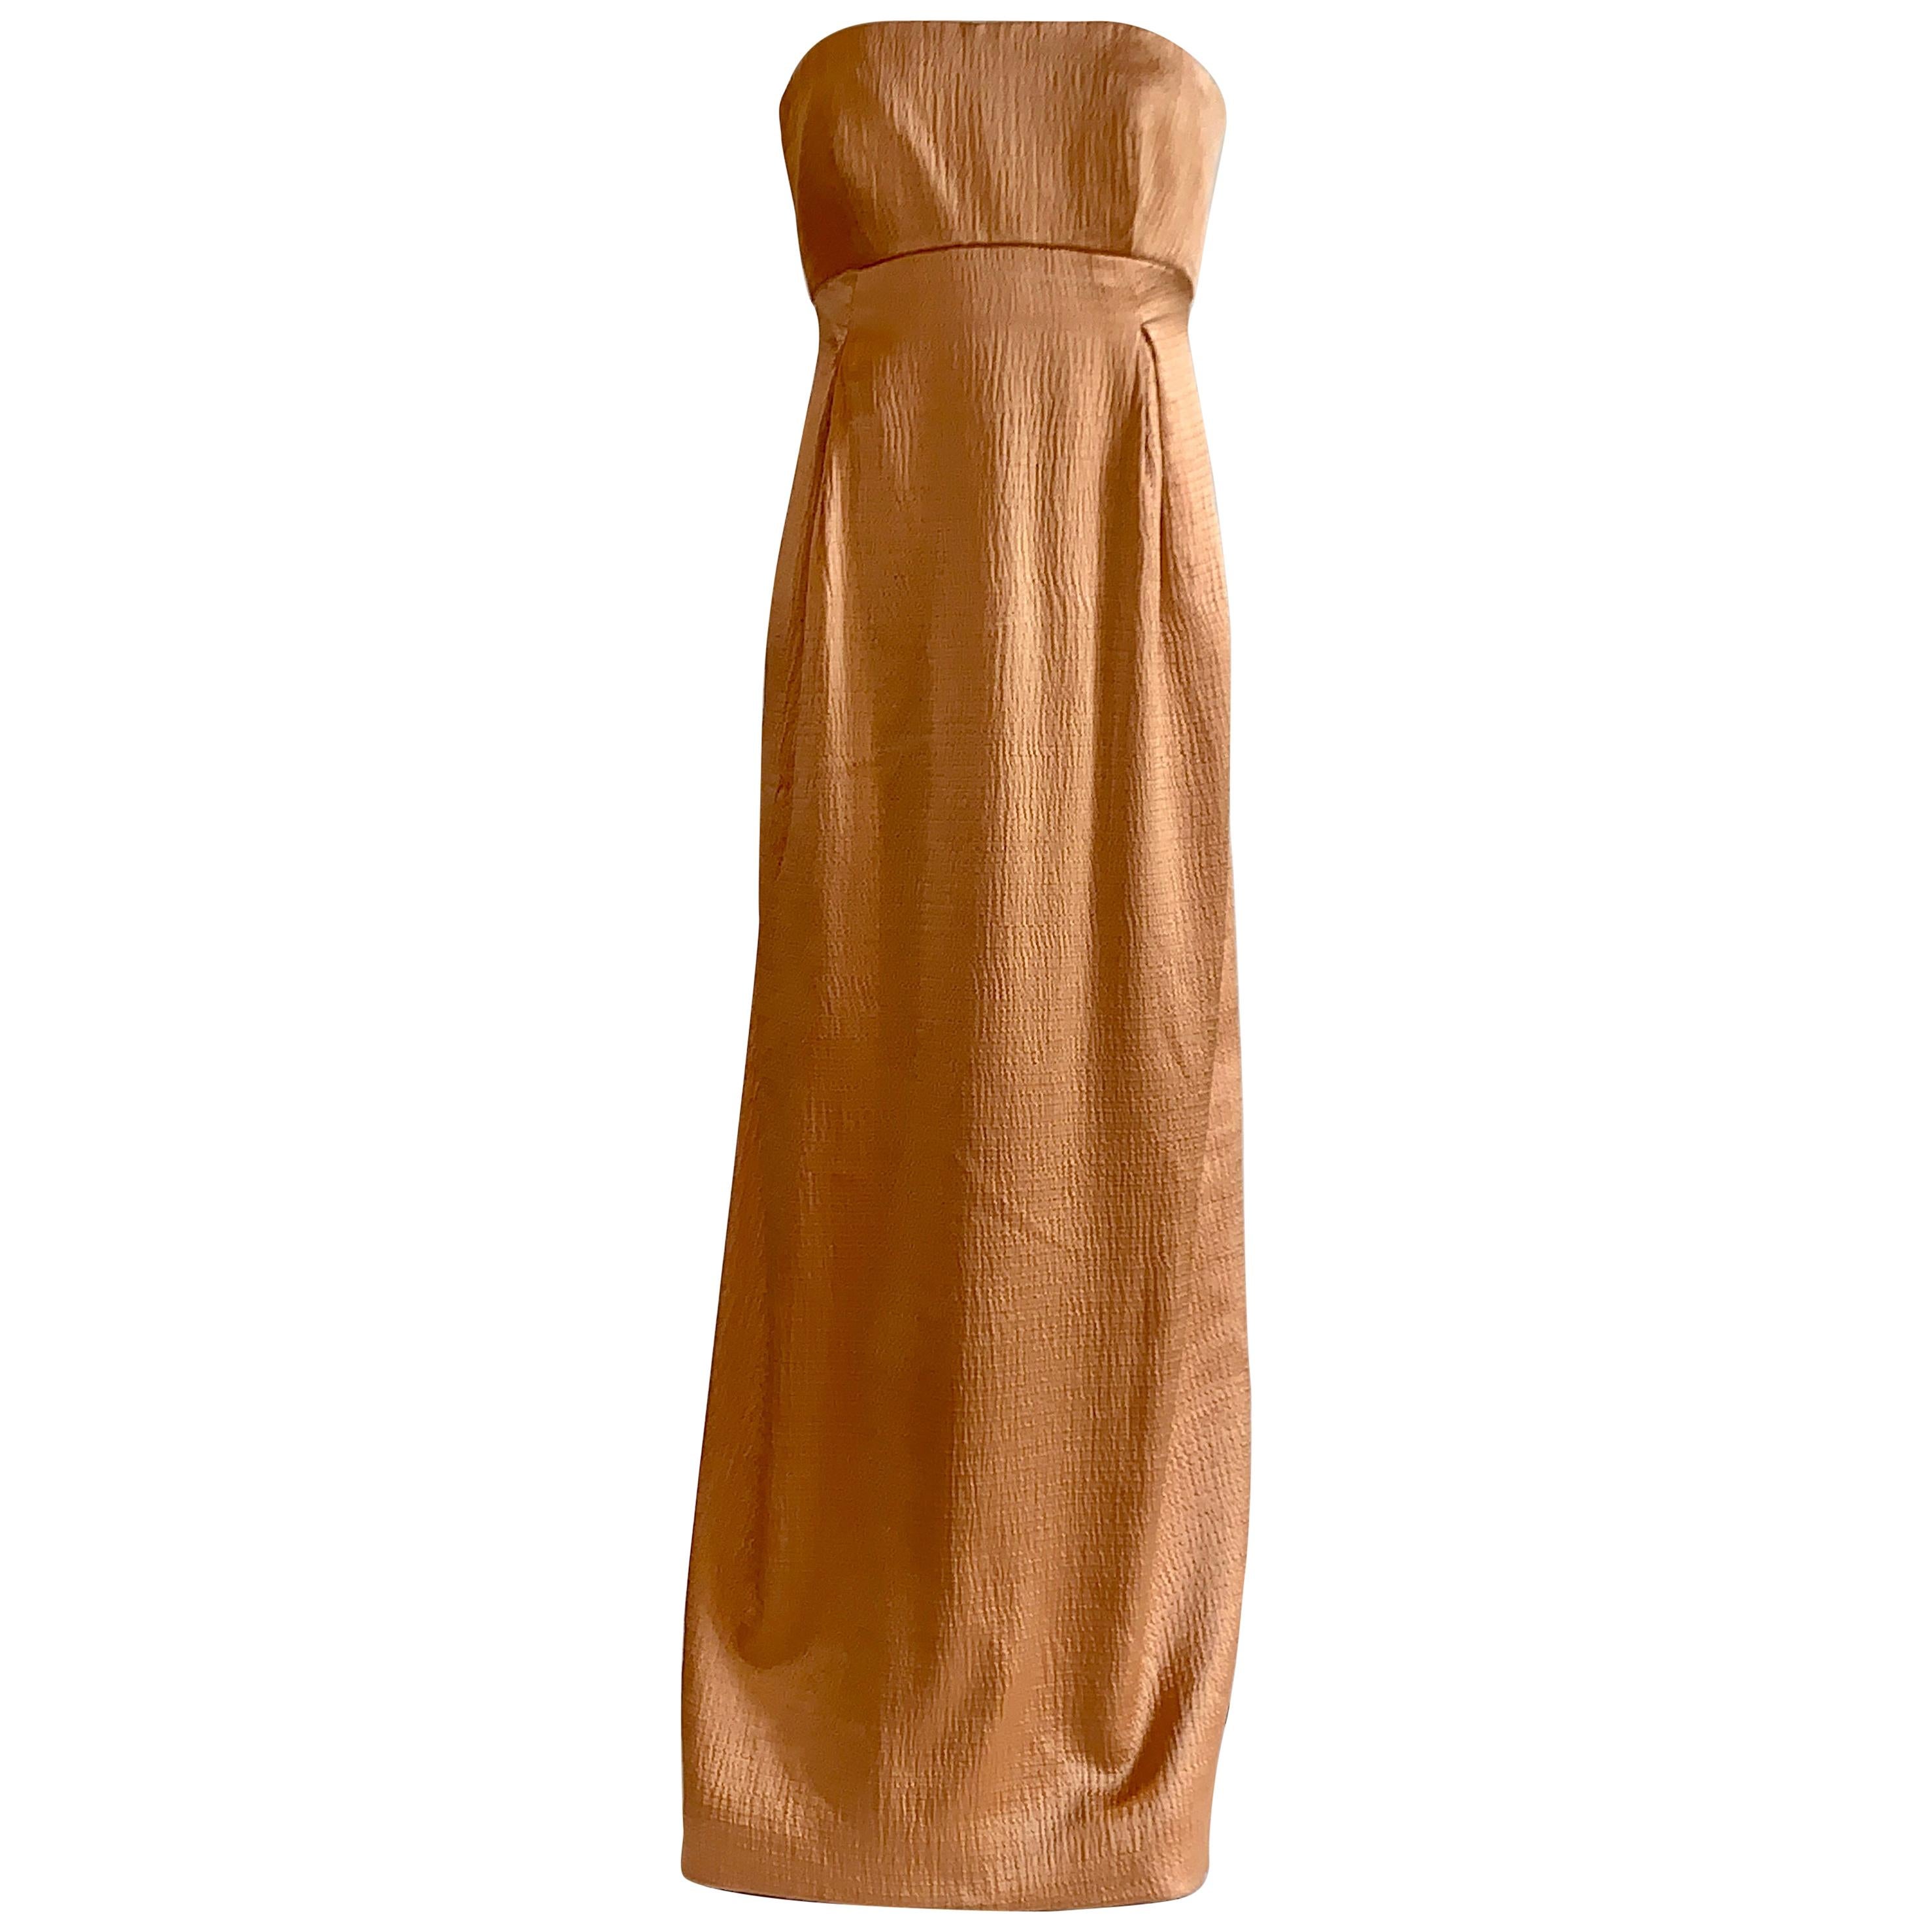 Geoffrey Beene 1990s Textured Silk Apricot Beige Strapless Evening Gown For Sale